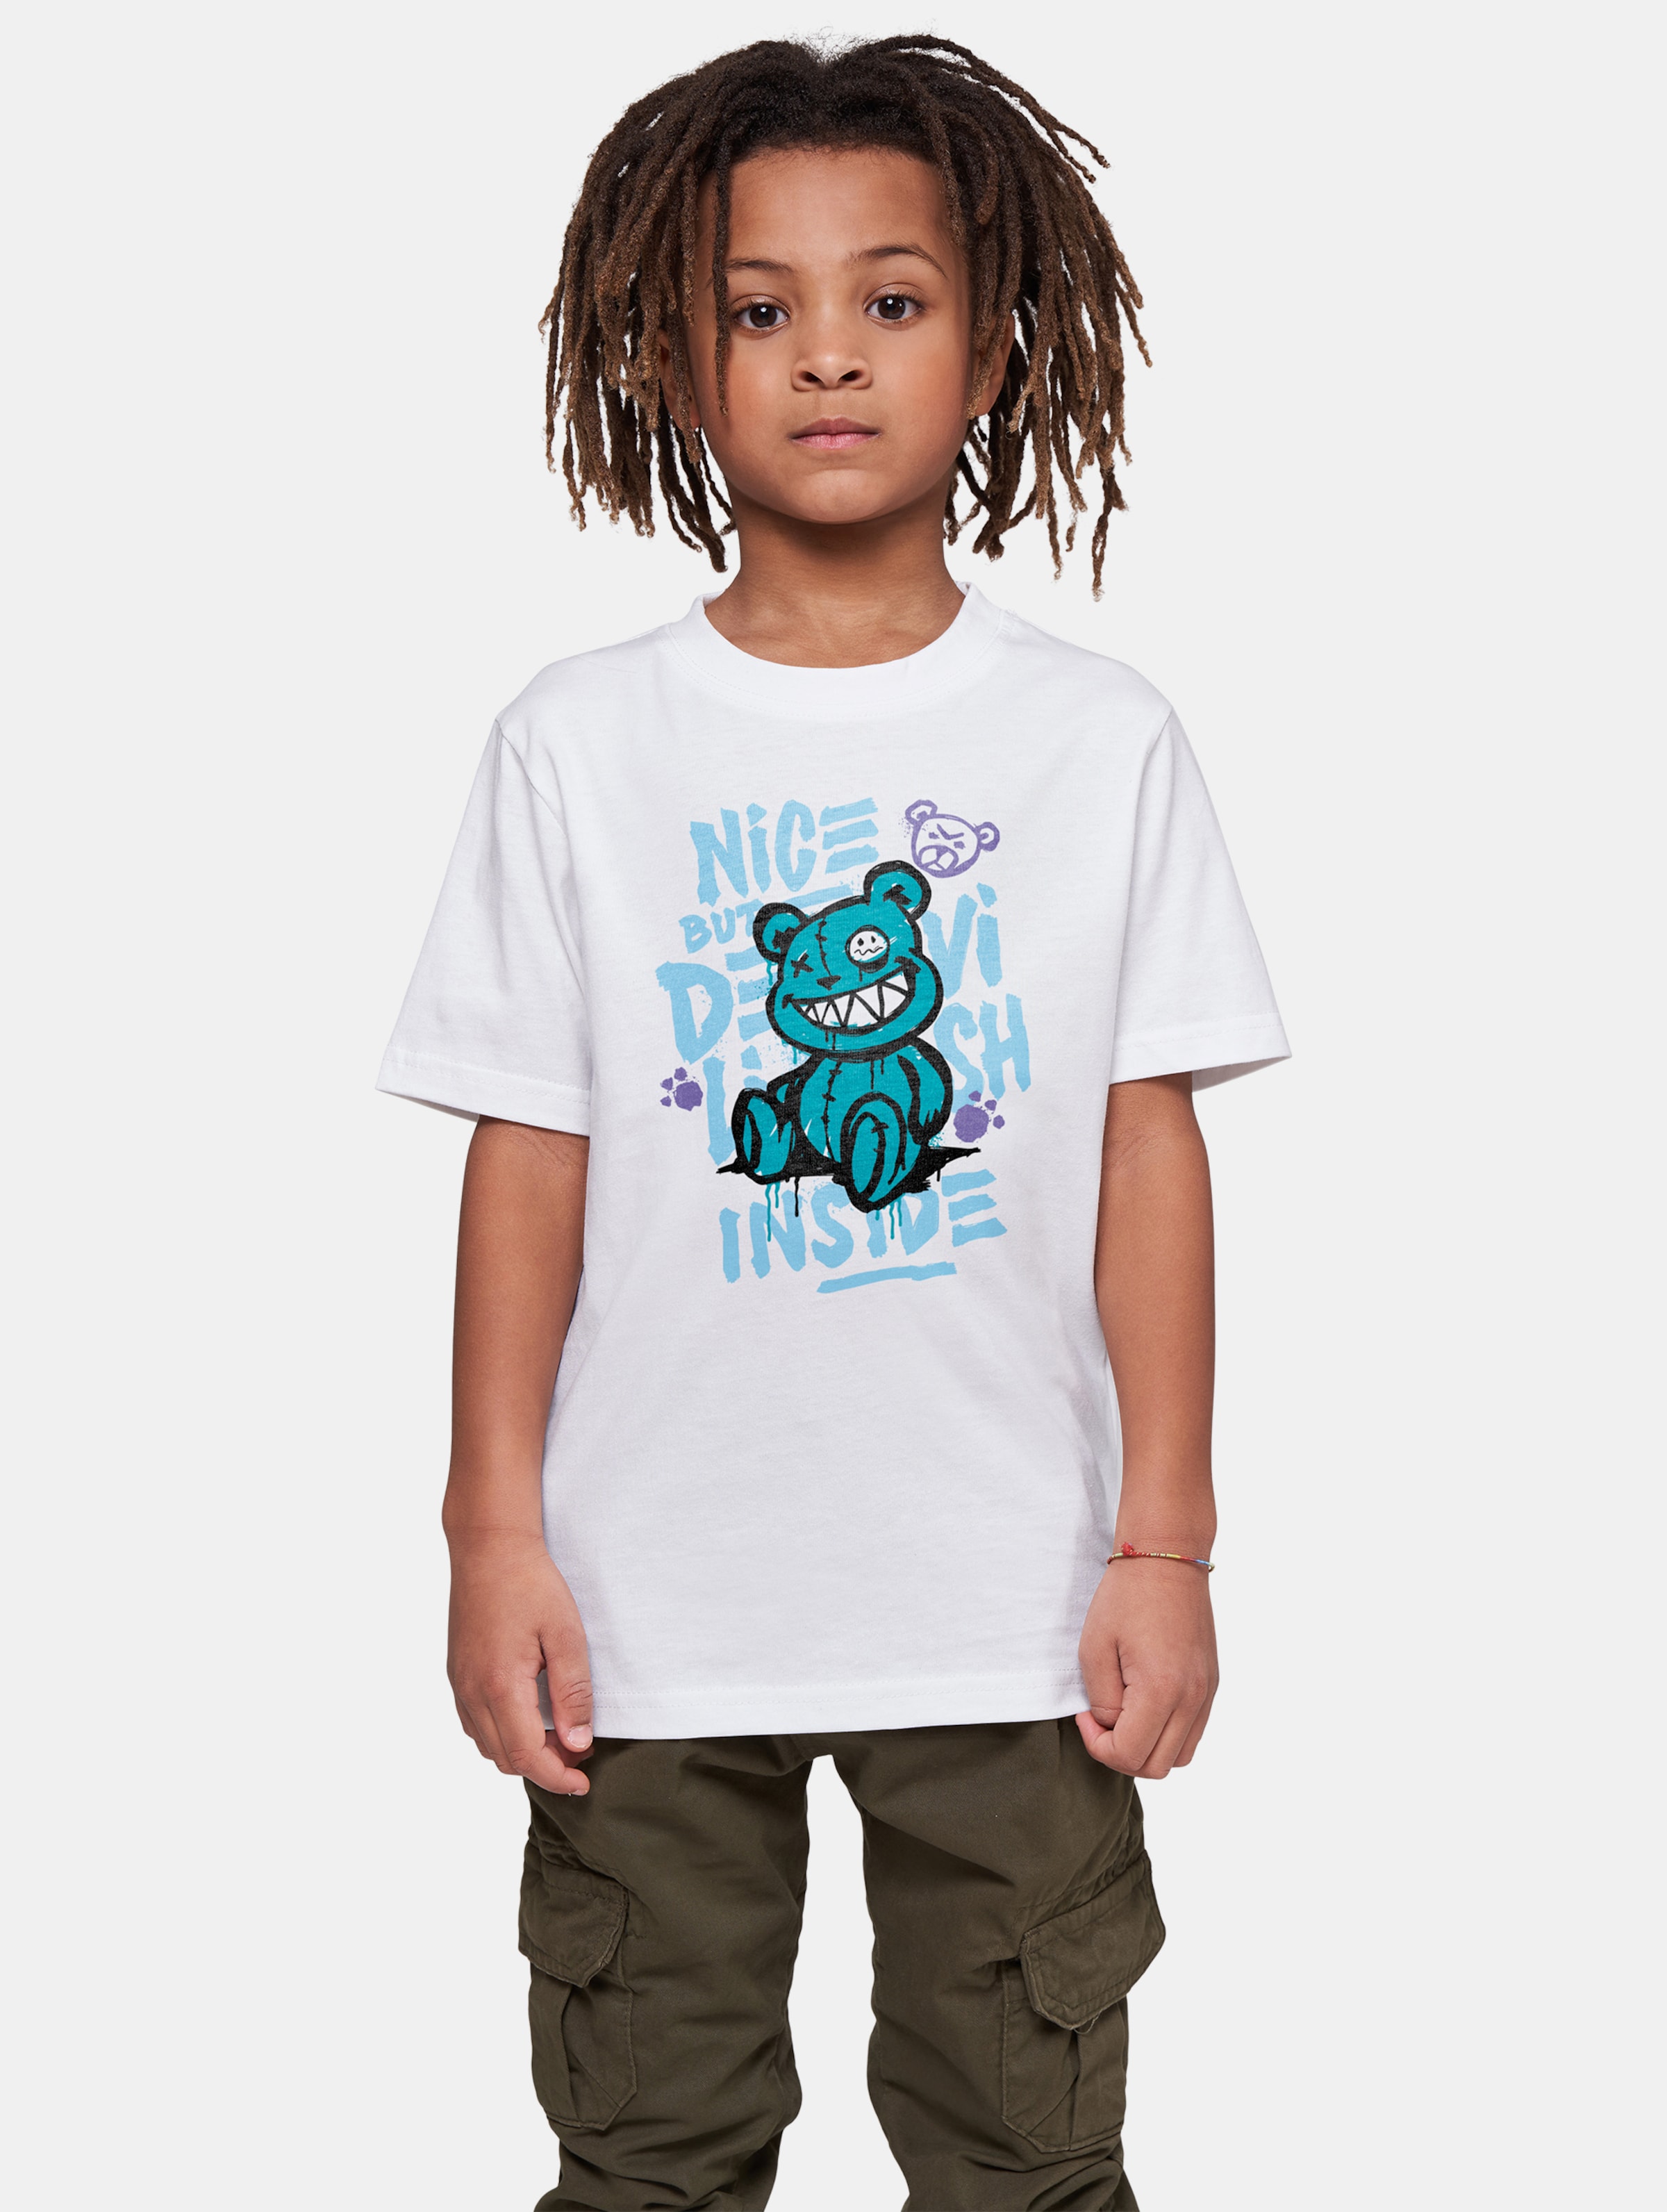 Mister Tee - Nice But Devilish Kinder T-shirt - Kids 134/140 - Wit